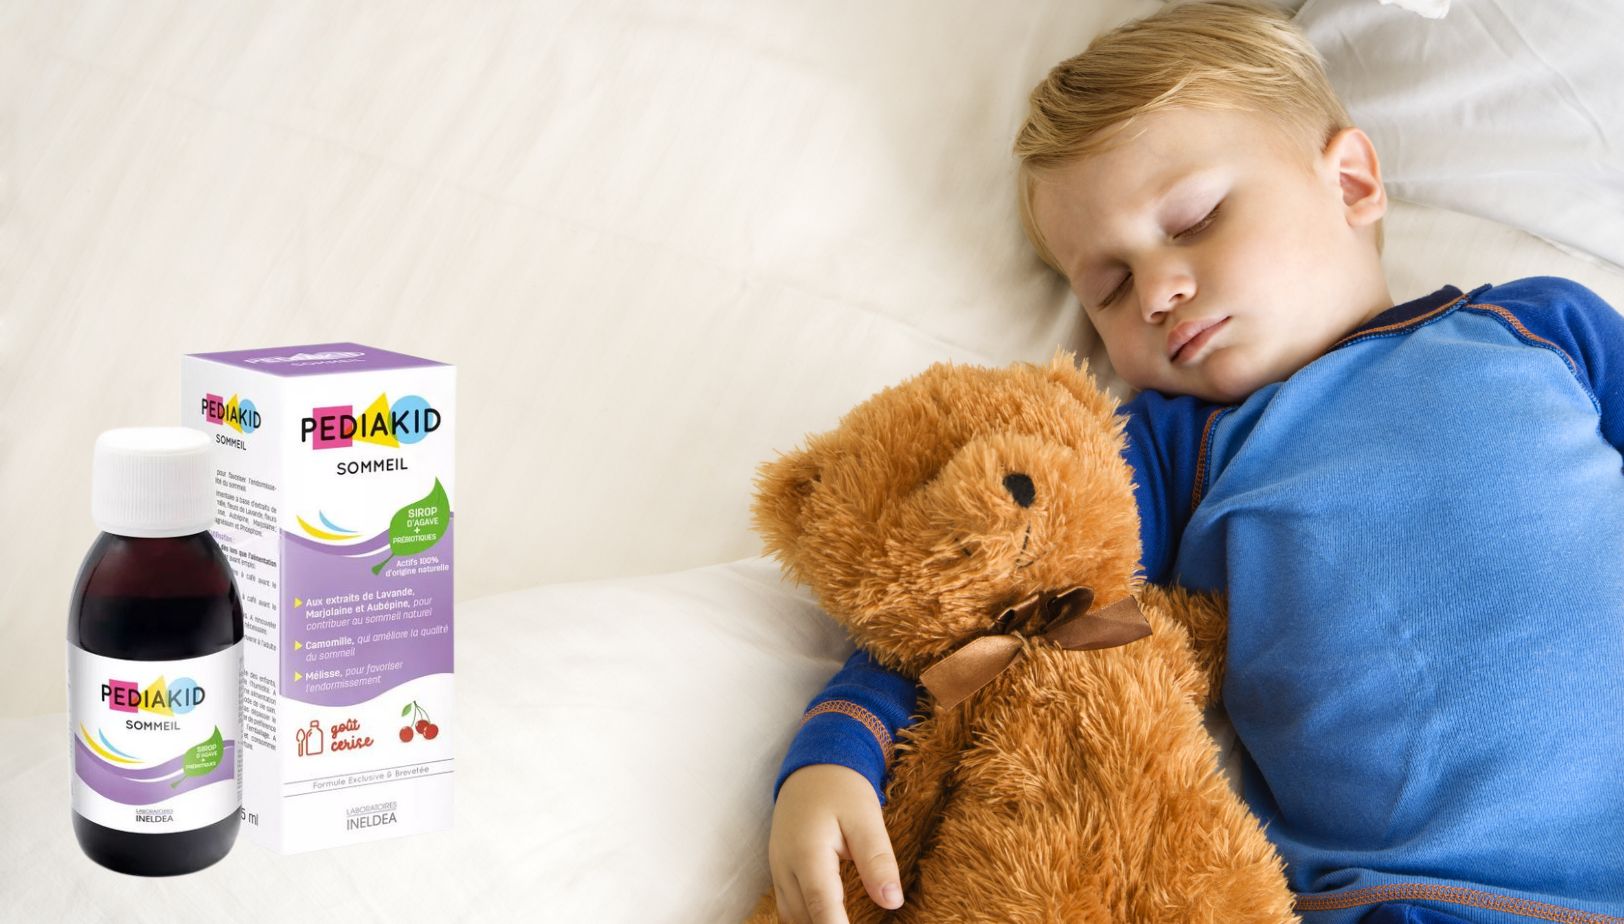 pediakid sommeil avis pédiatre